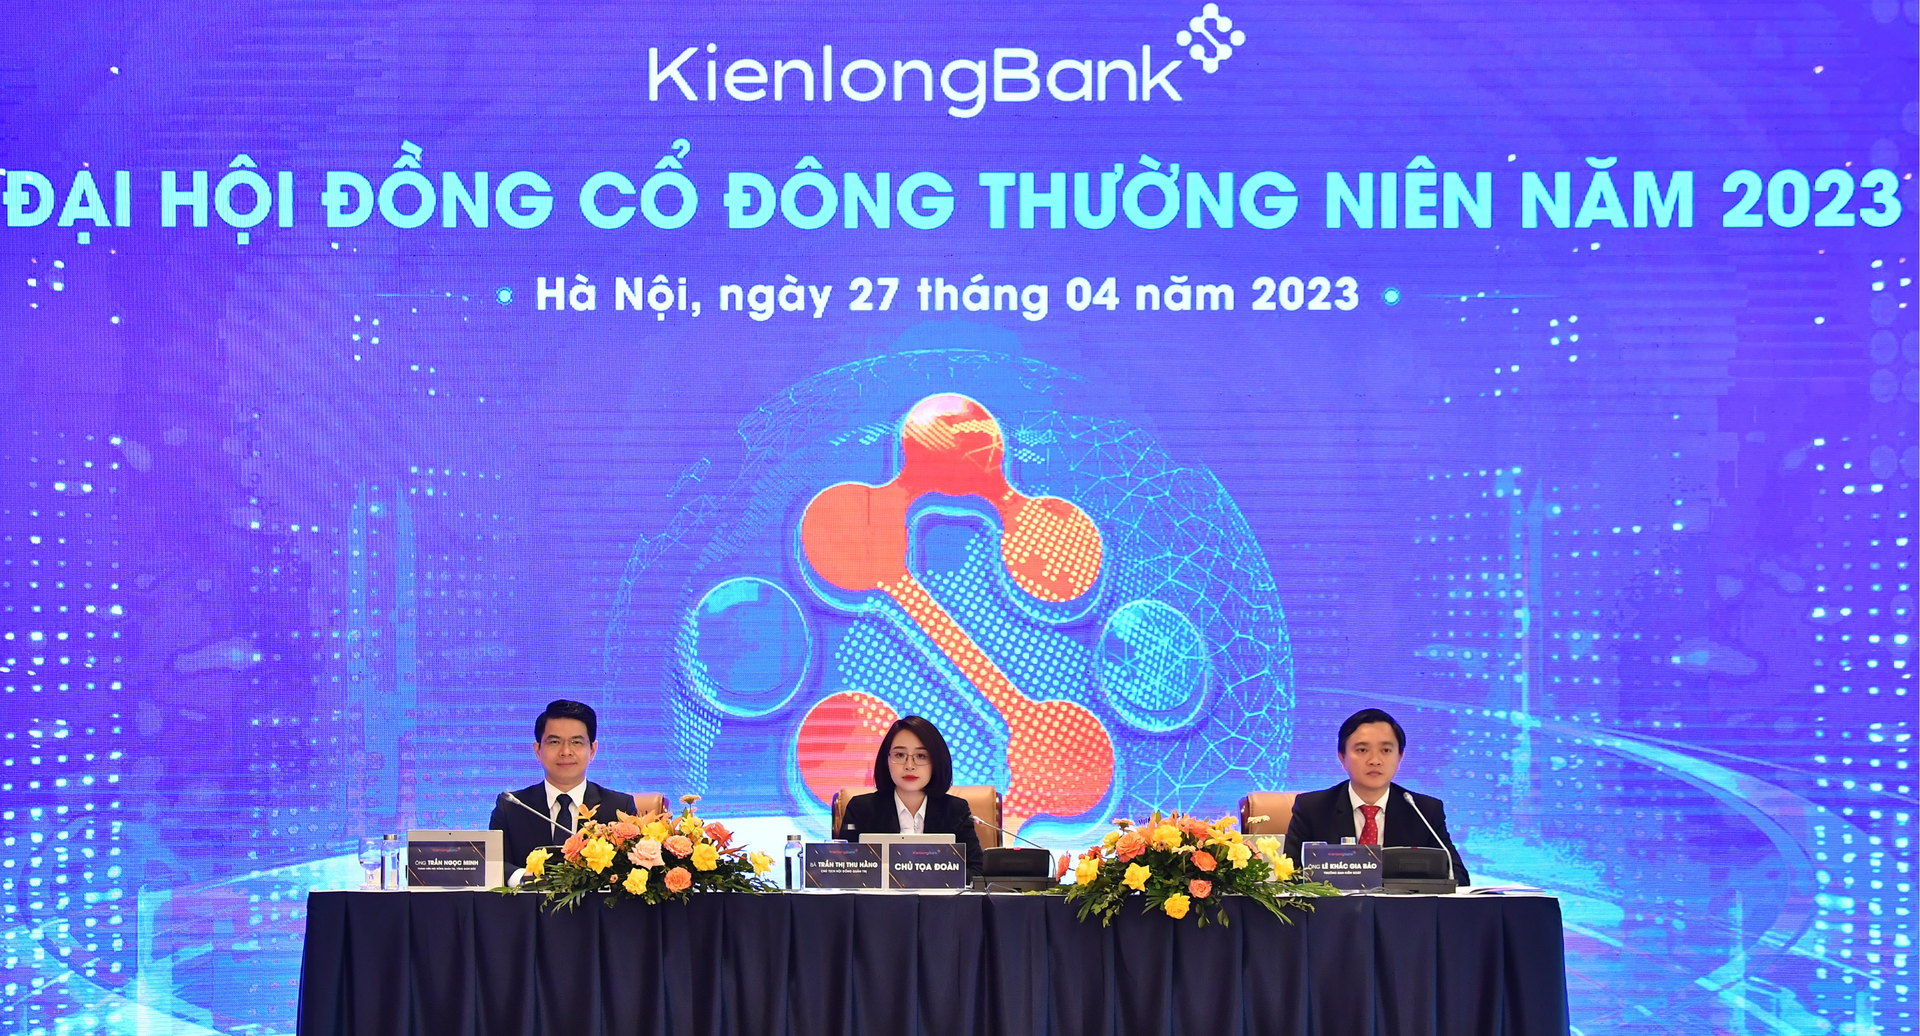 Mục tiêu đạt 700 tỷ lợi nhuận trước thuế năm 2023 của ĐHĐCĐ KienlongBank